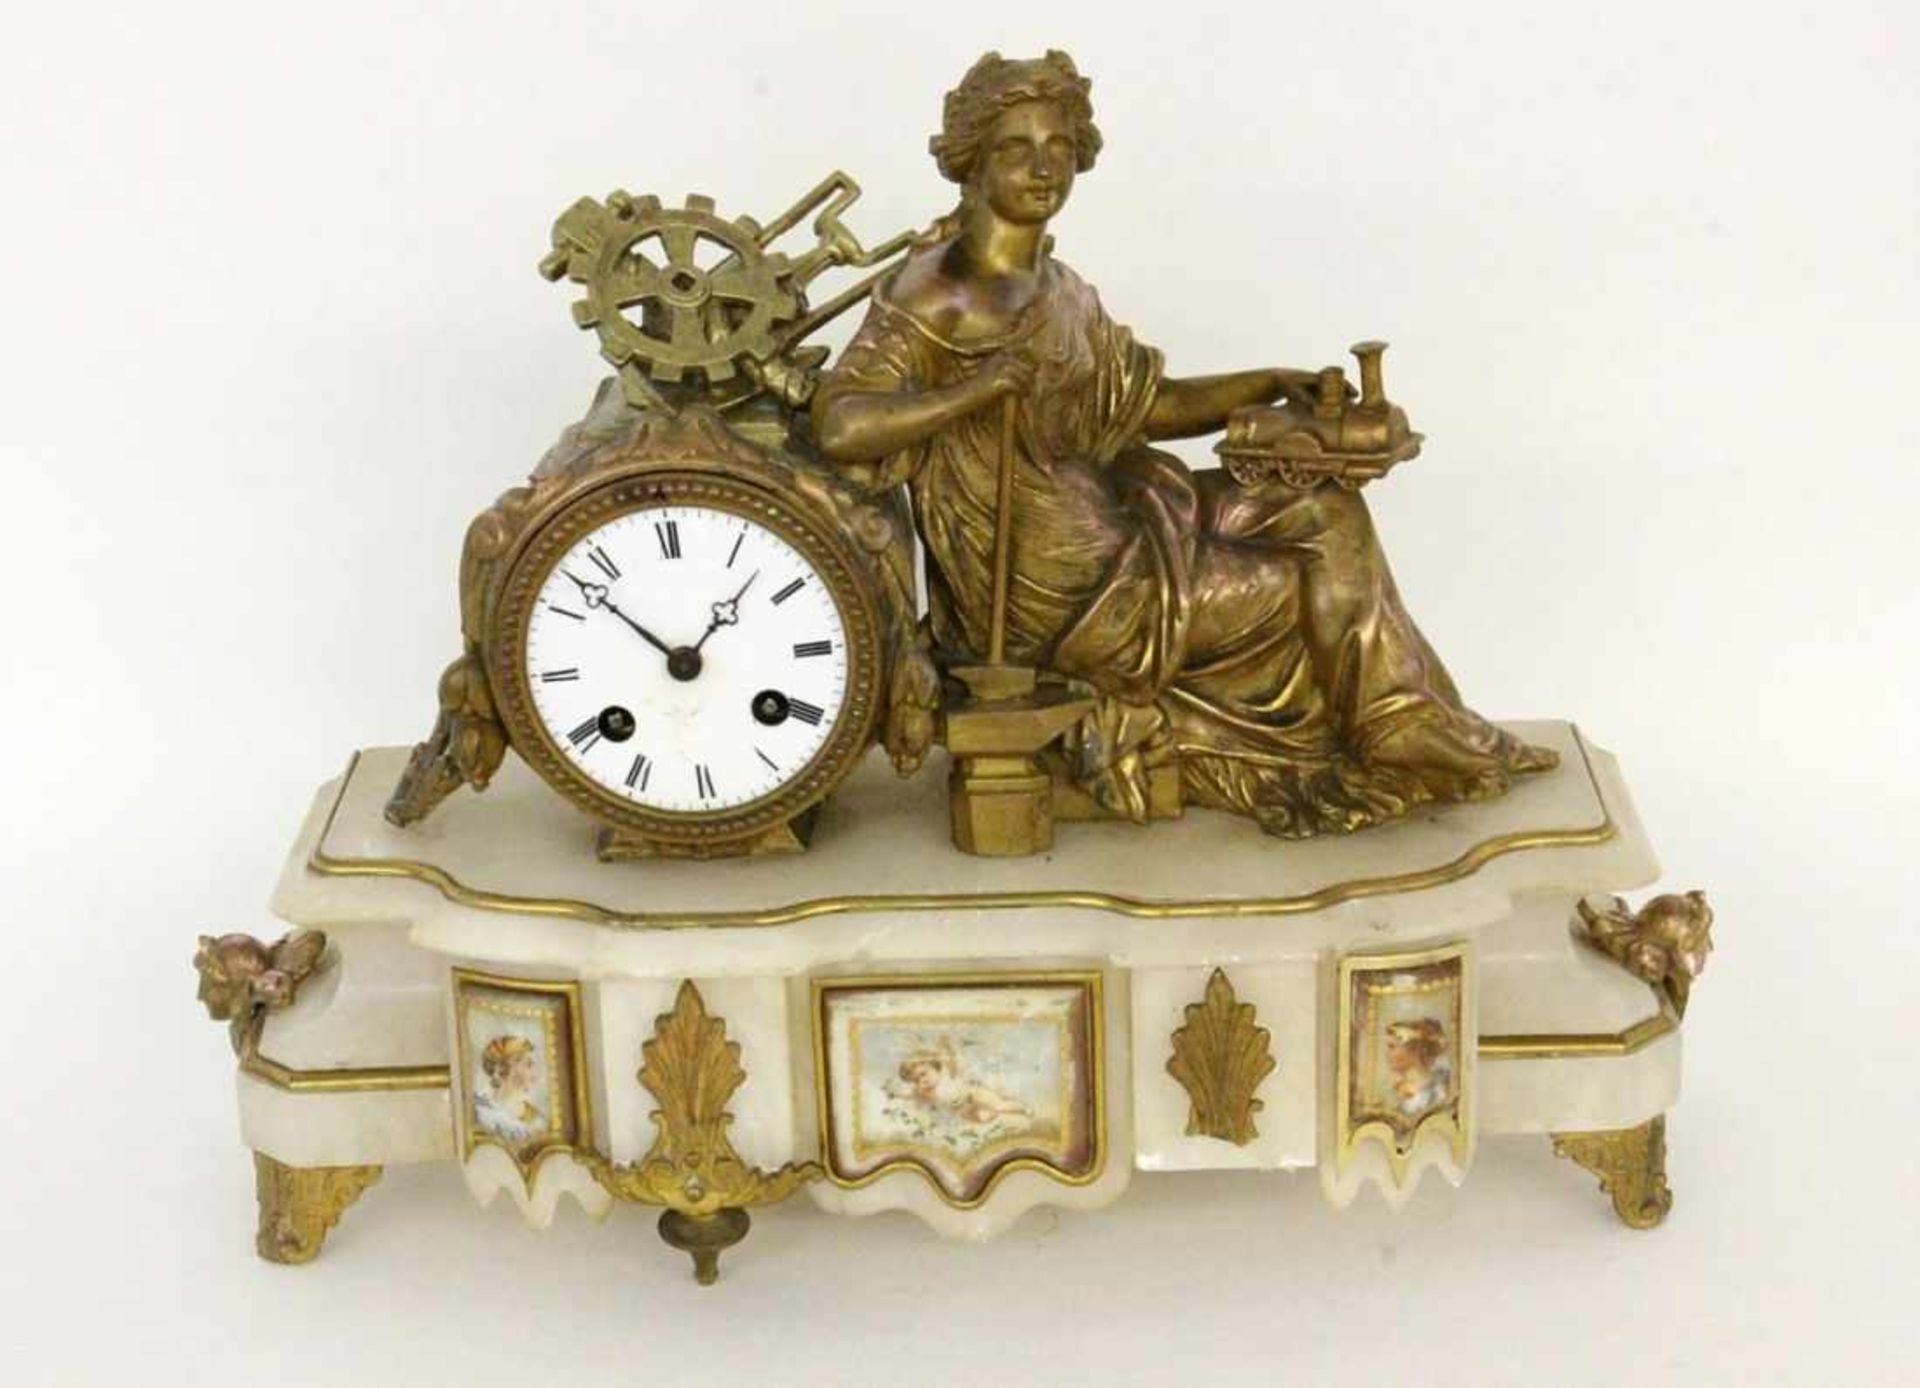 FIGURENUHR MIT ALLEGORIE AUF DIEINDUSTRIE Frankreich um 1890 Vergoldetes Metallgehäuse mit sitzender